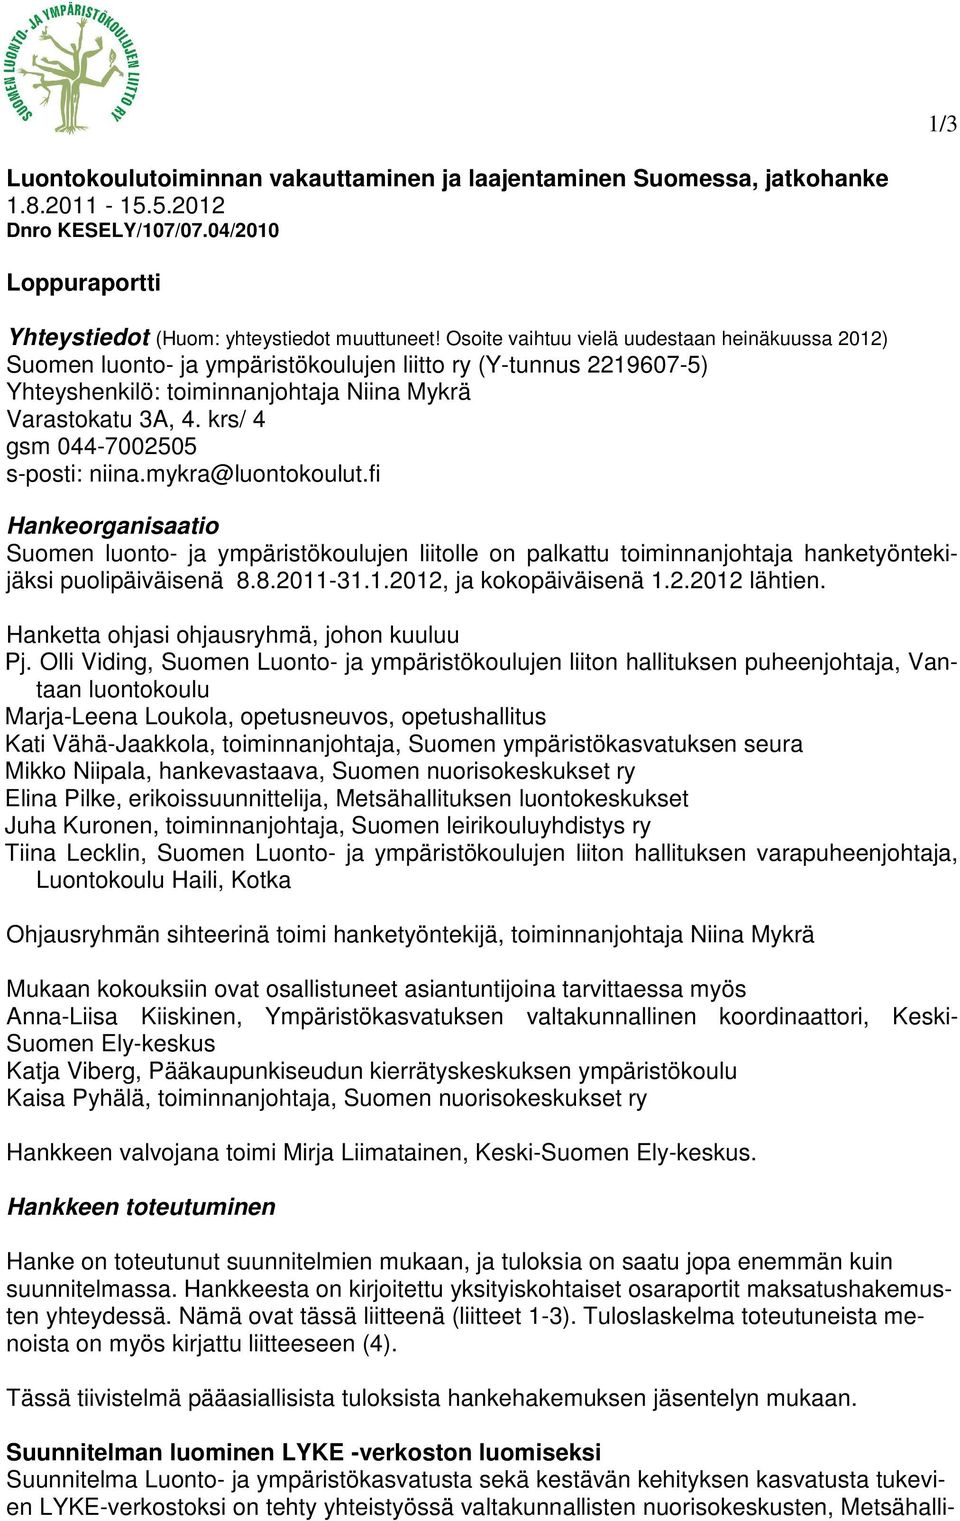 krs/ 4 gsm 044-7002505 s-posti: niina.mykra@luontokoulut.fi Hankeorganisaatio Suomen luonto- ja ympäristökoulujen liitolle on palkattu toiminnanjohtaja hanketyöntekijäksi puolipäiväisenä 8.8.2011-31.